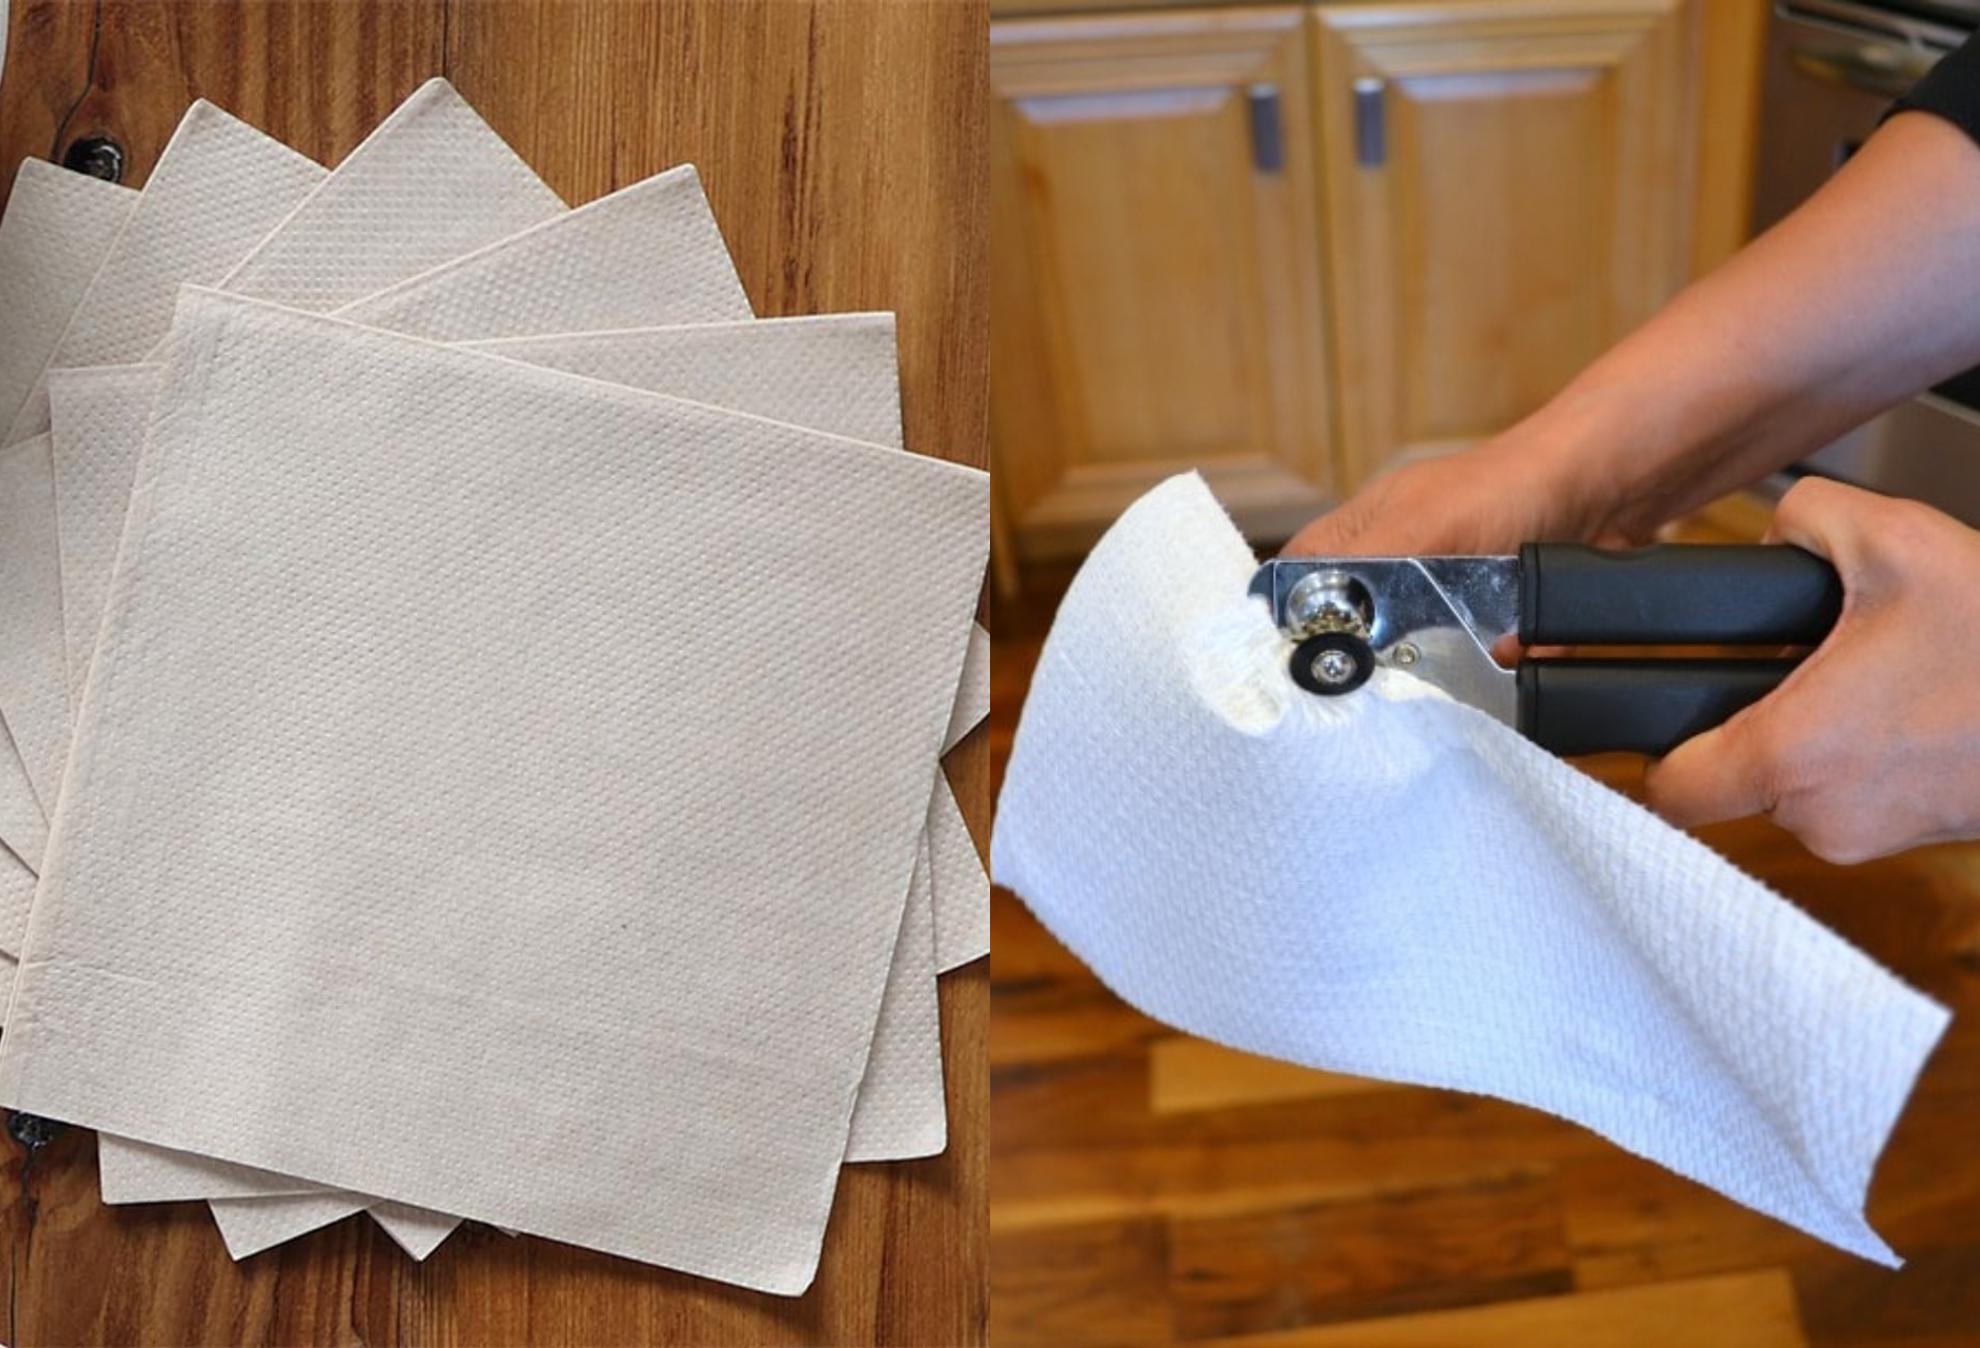 12 Χρήσεις για τις χαρτοπετσέτες που δεν δεν φανταζόσουν και θα σου λύσουν τα χέρια